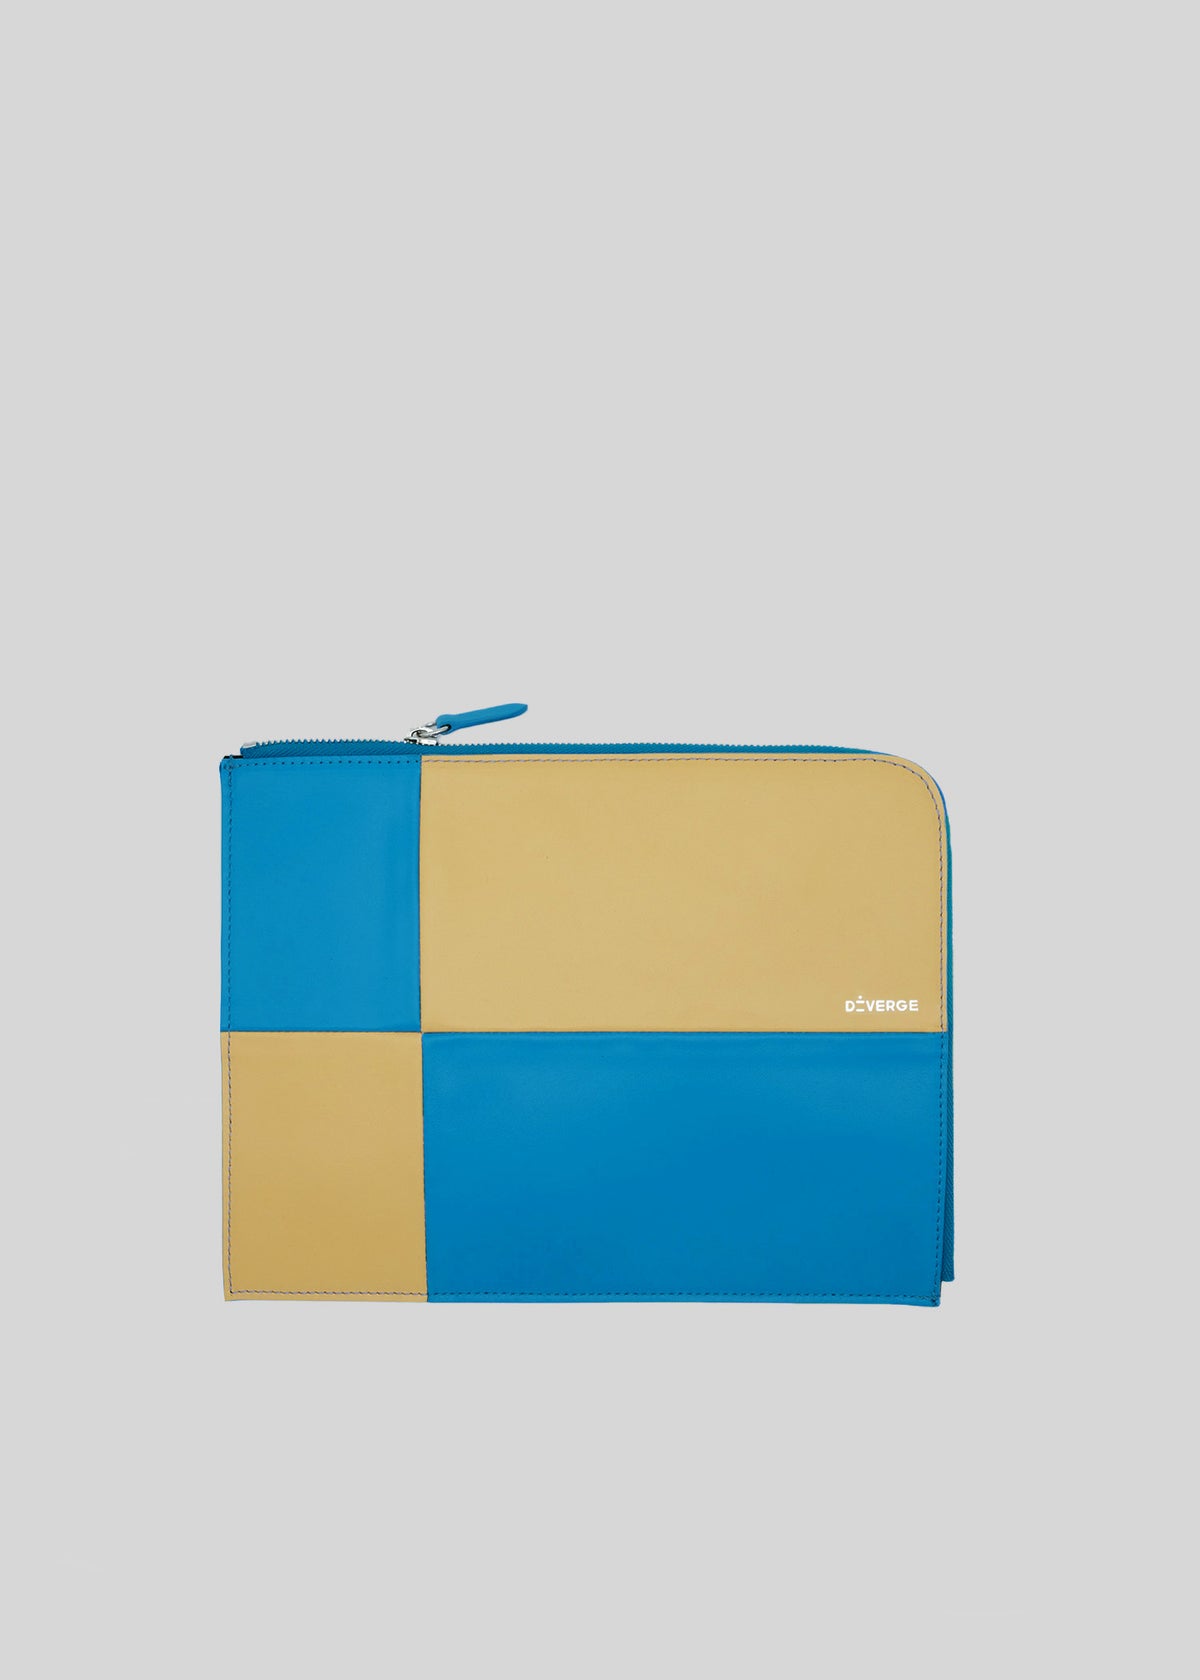 Ein blaues und gelbes M Patchwork Pouch Yellow & Blue Portemonnaie mit Reißverschluss und dem Markennamen auf der unteren Vorderseite.